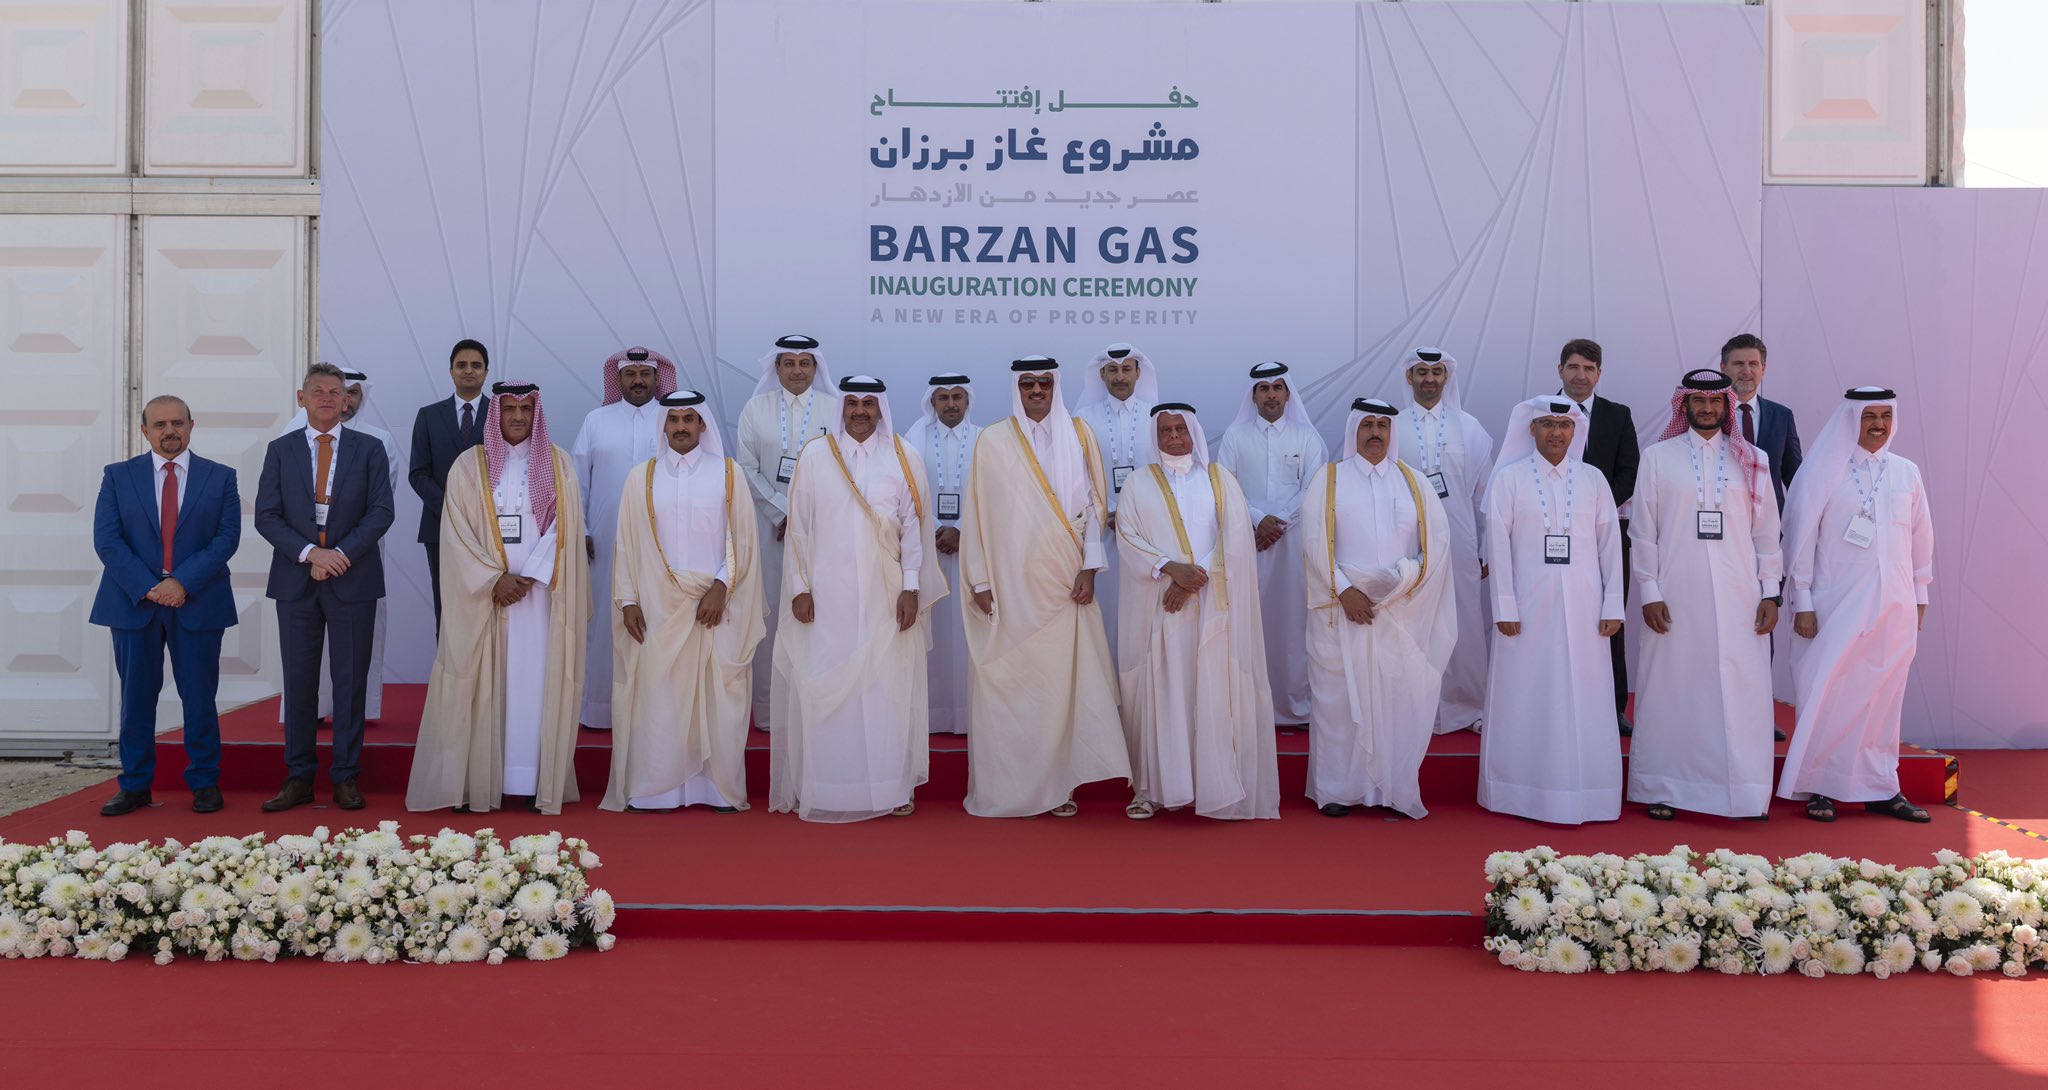 أمير قطر الشيخ تميم بن حمد آل ثاني يفتتح مشروع غاز برزان - قنا